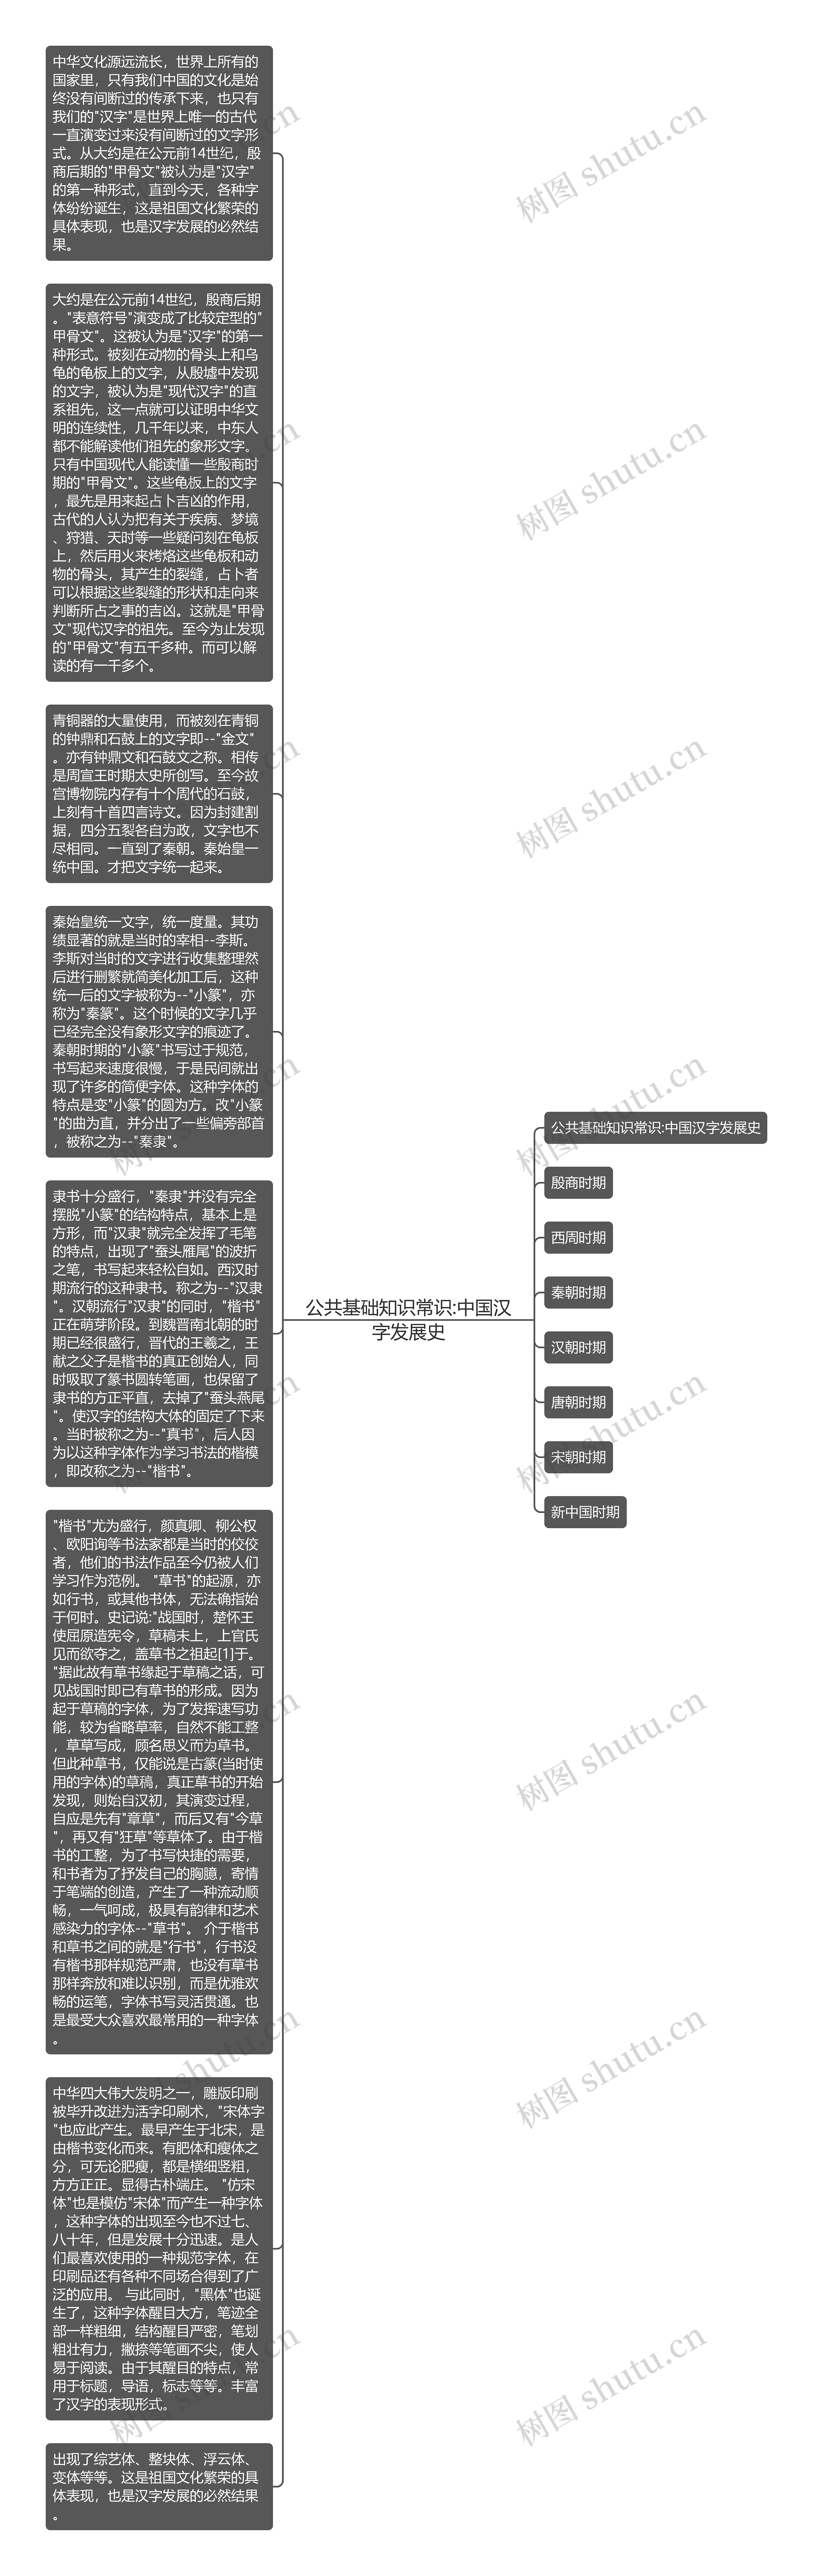 公共基础知识常识:中国汉字发展史